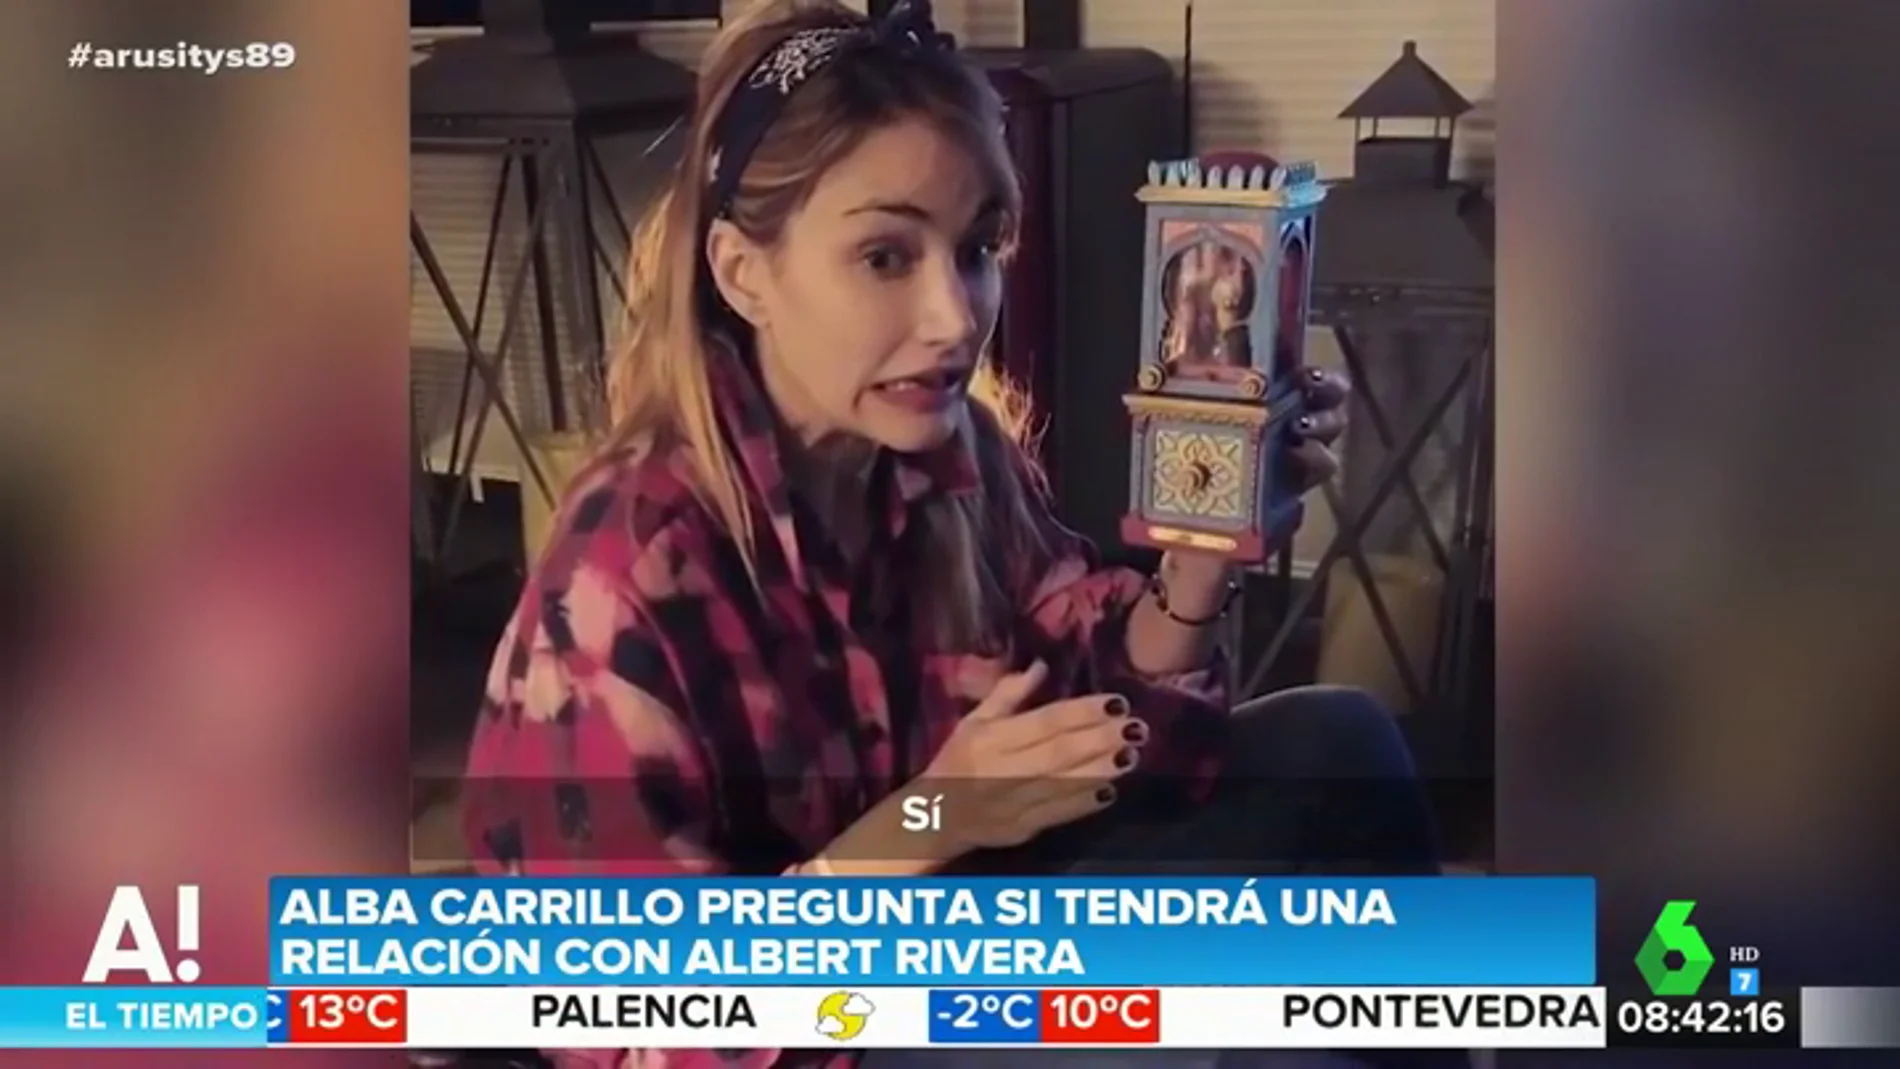 Alba Carrillo y sus indirectas a Albert Rivera: así es su surrealista vídeo pidiéndole una cita